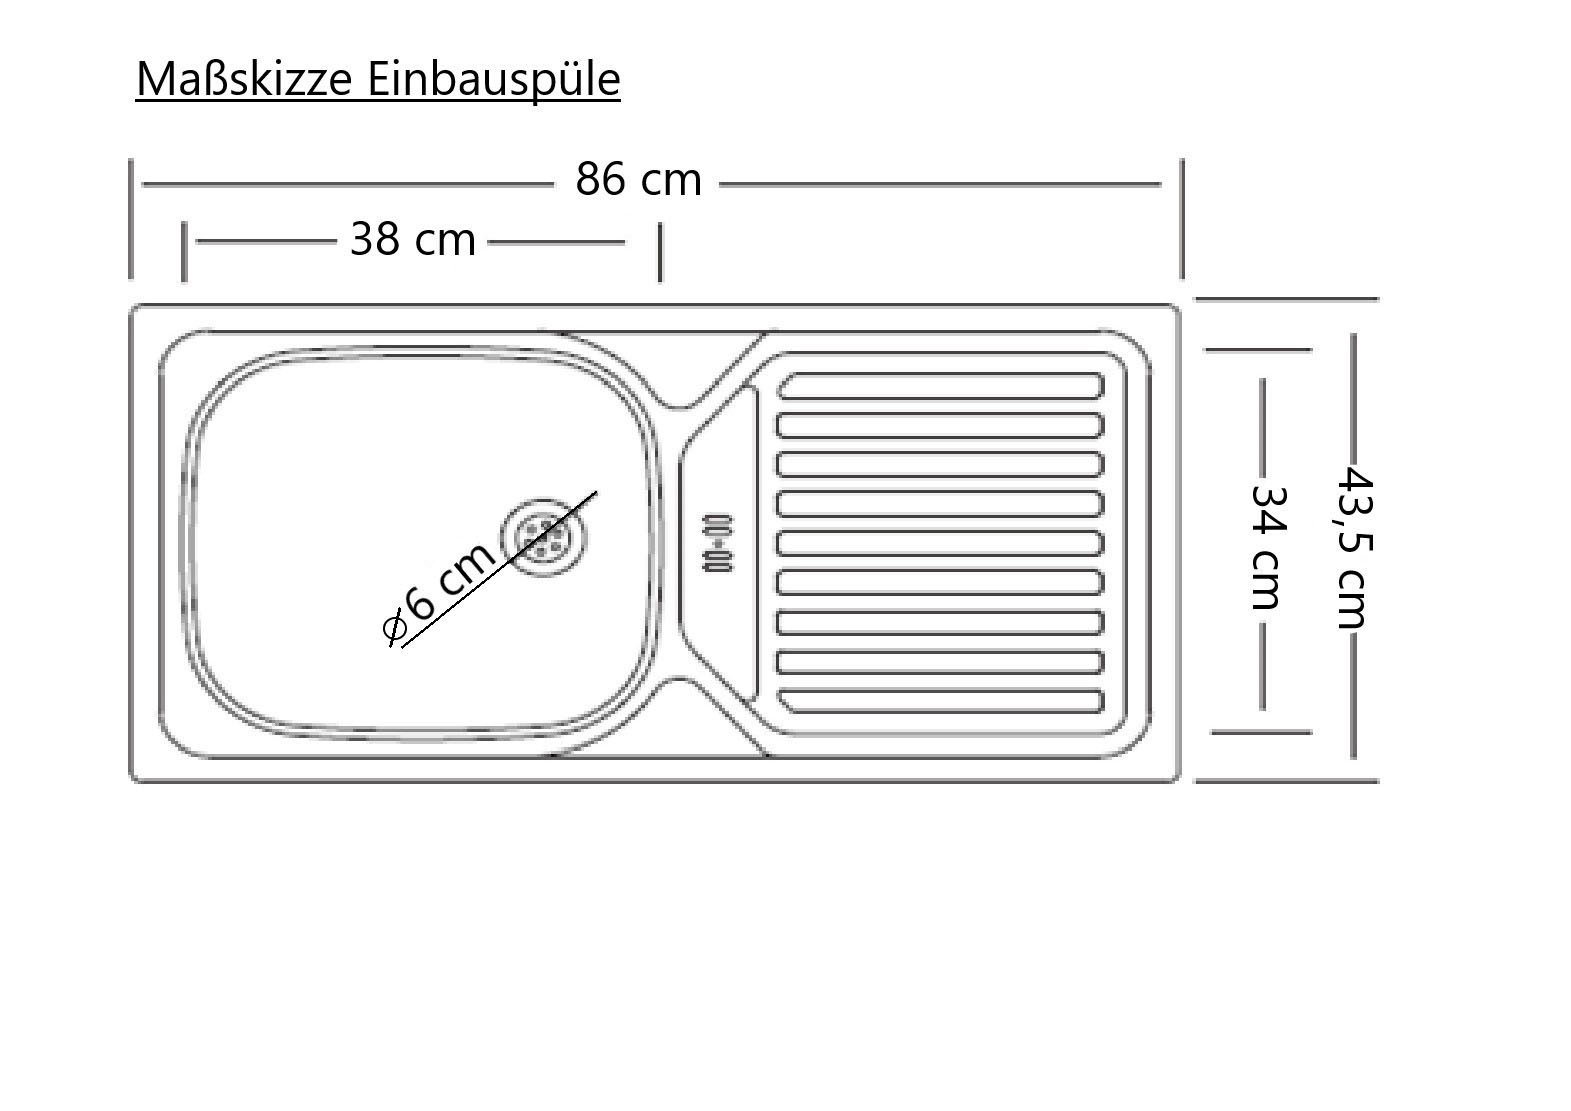 Kochstation Küchenzeile »KS-Lani, mit MDF-Fronten«, Breite 240 cm, wahlweise mit E-Geräten, Höhen-Ausgleichsfüße 0-4 cm